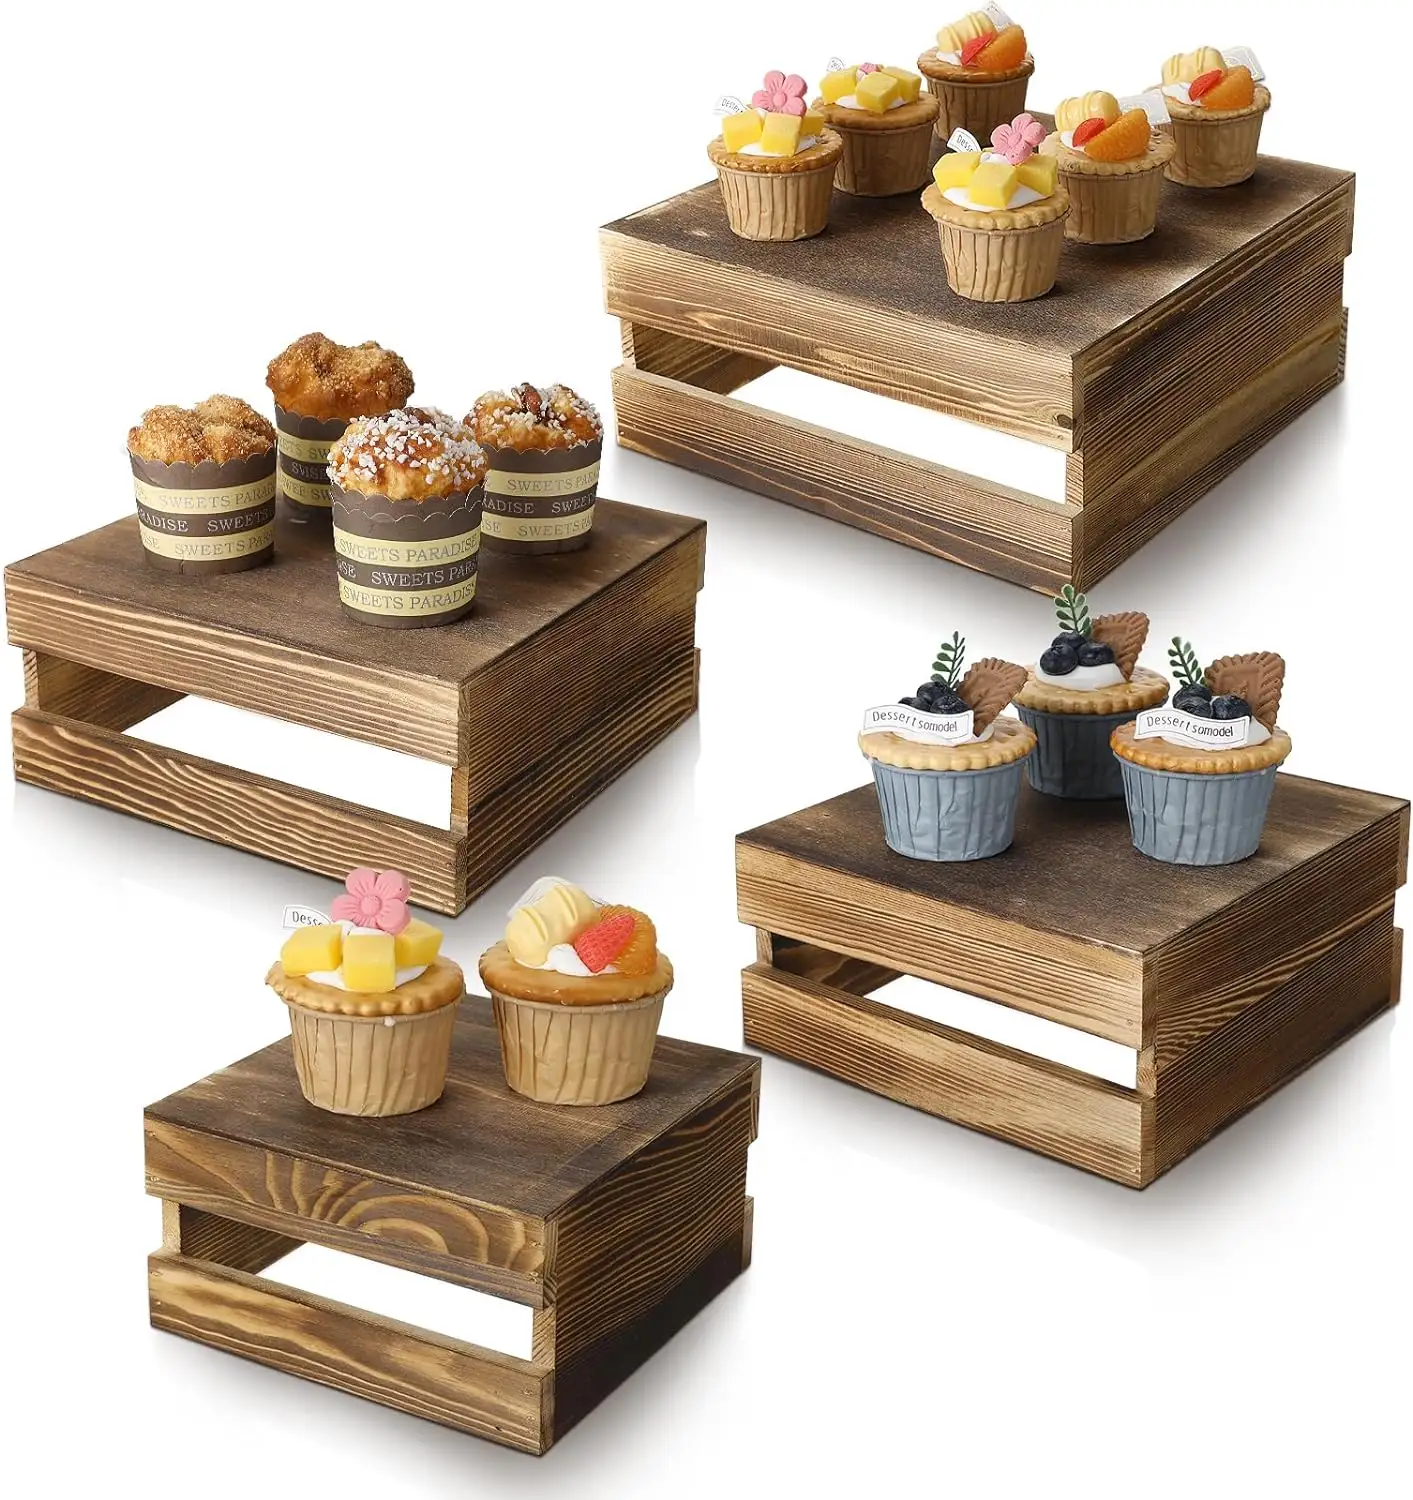 素朴な木製カップケーキディスプレイスタンド: 装飾的なデザートと前菜のライザークレート、ケーキなどに最適